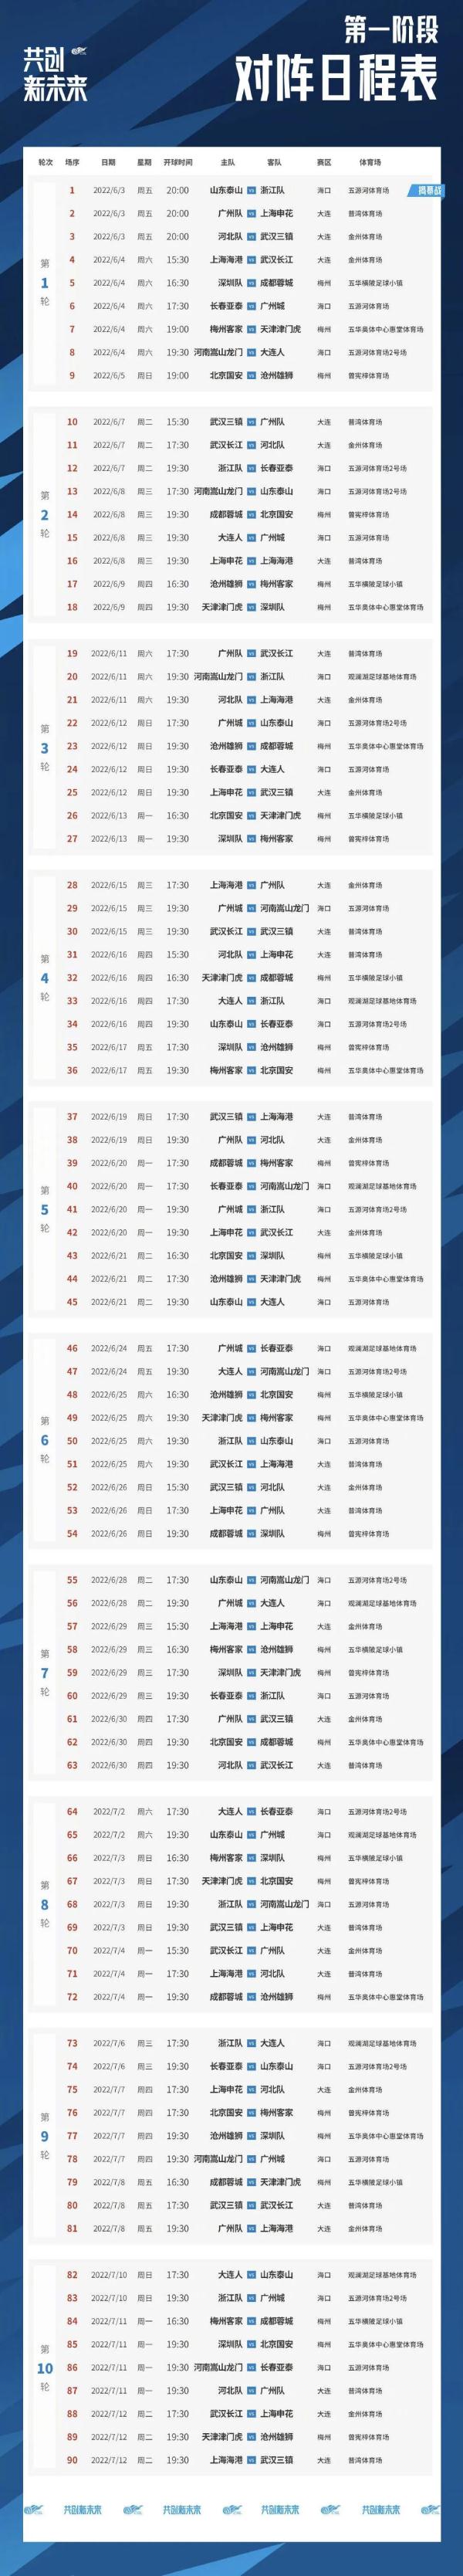 中超联赛2022赛季赛程表|2022年中超球队